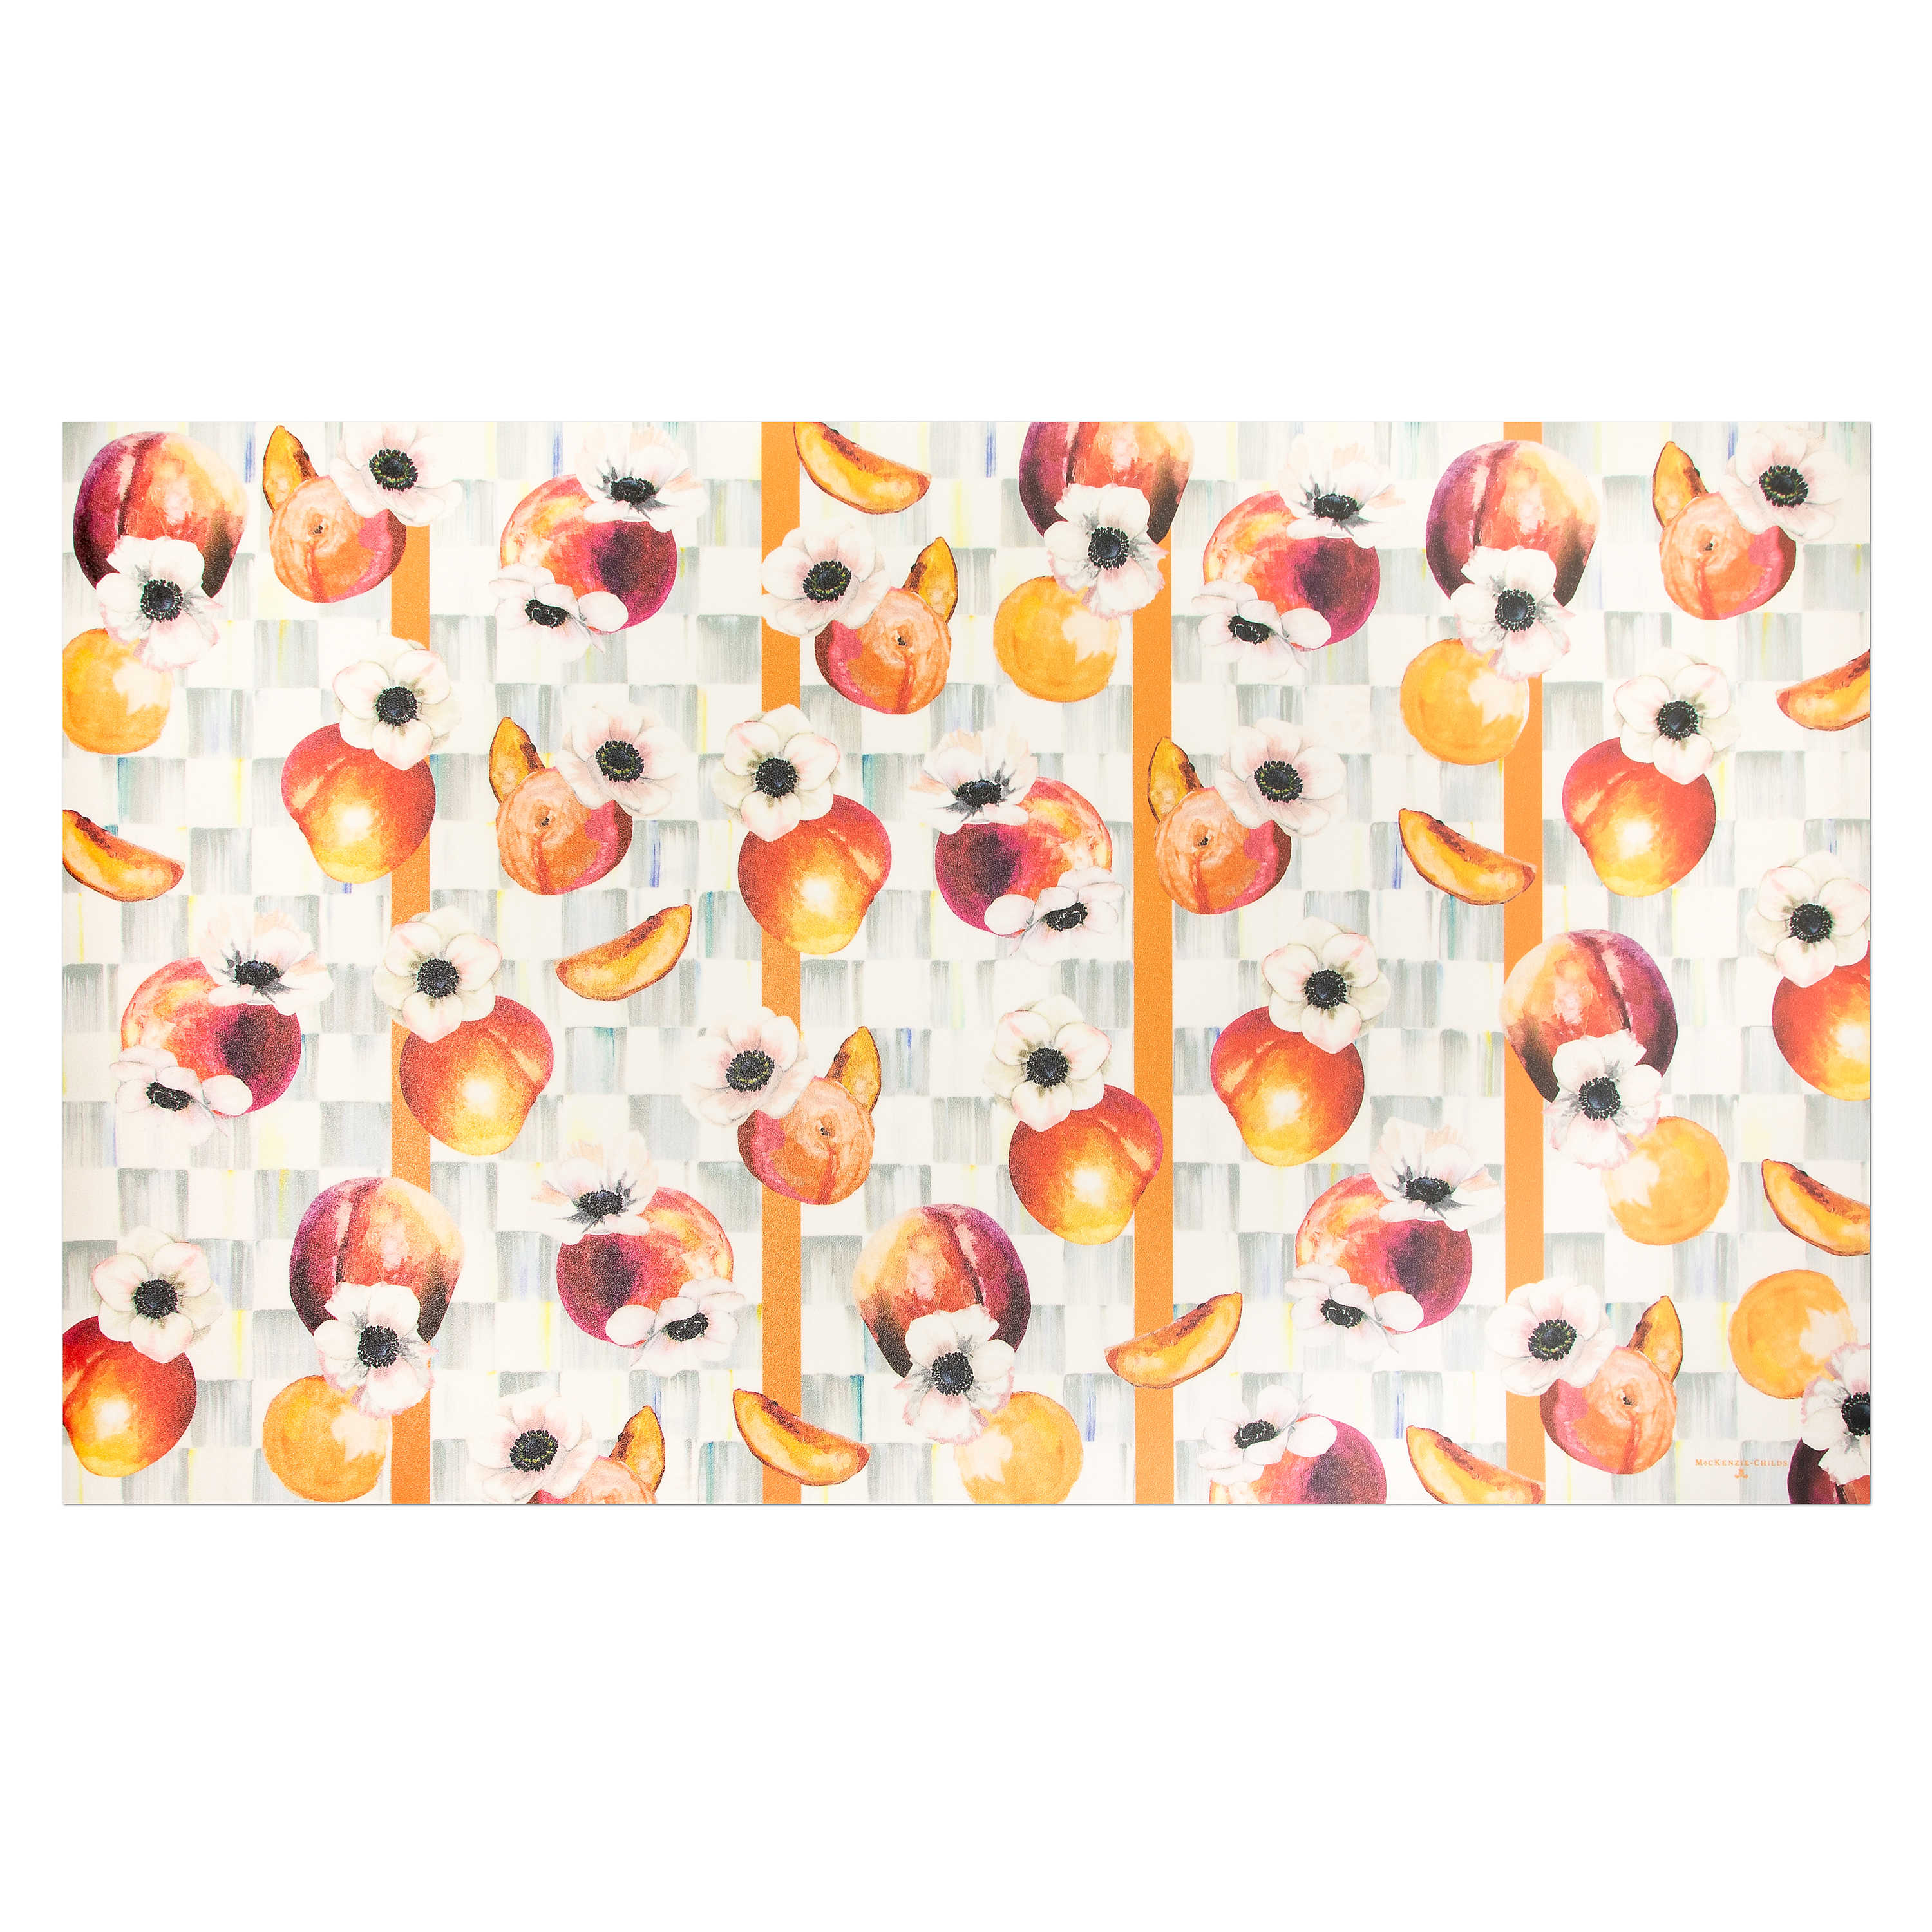 Peaches & Anemones Floor Mat - 3' x 5' mackenzie-childs Panama 0